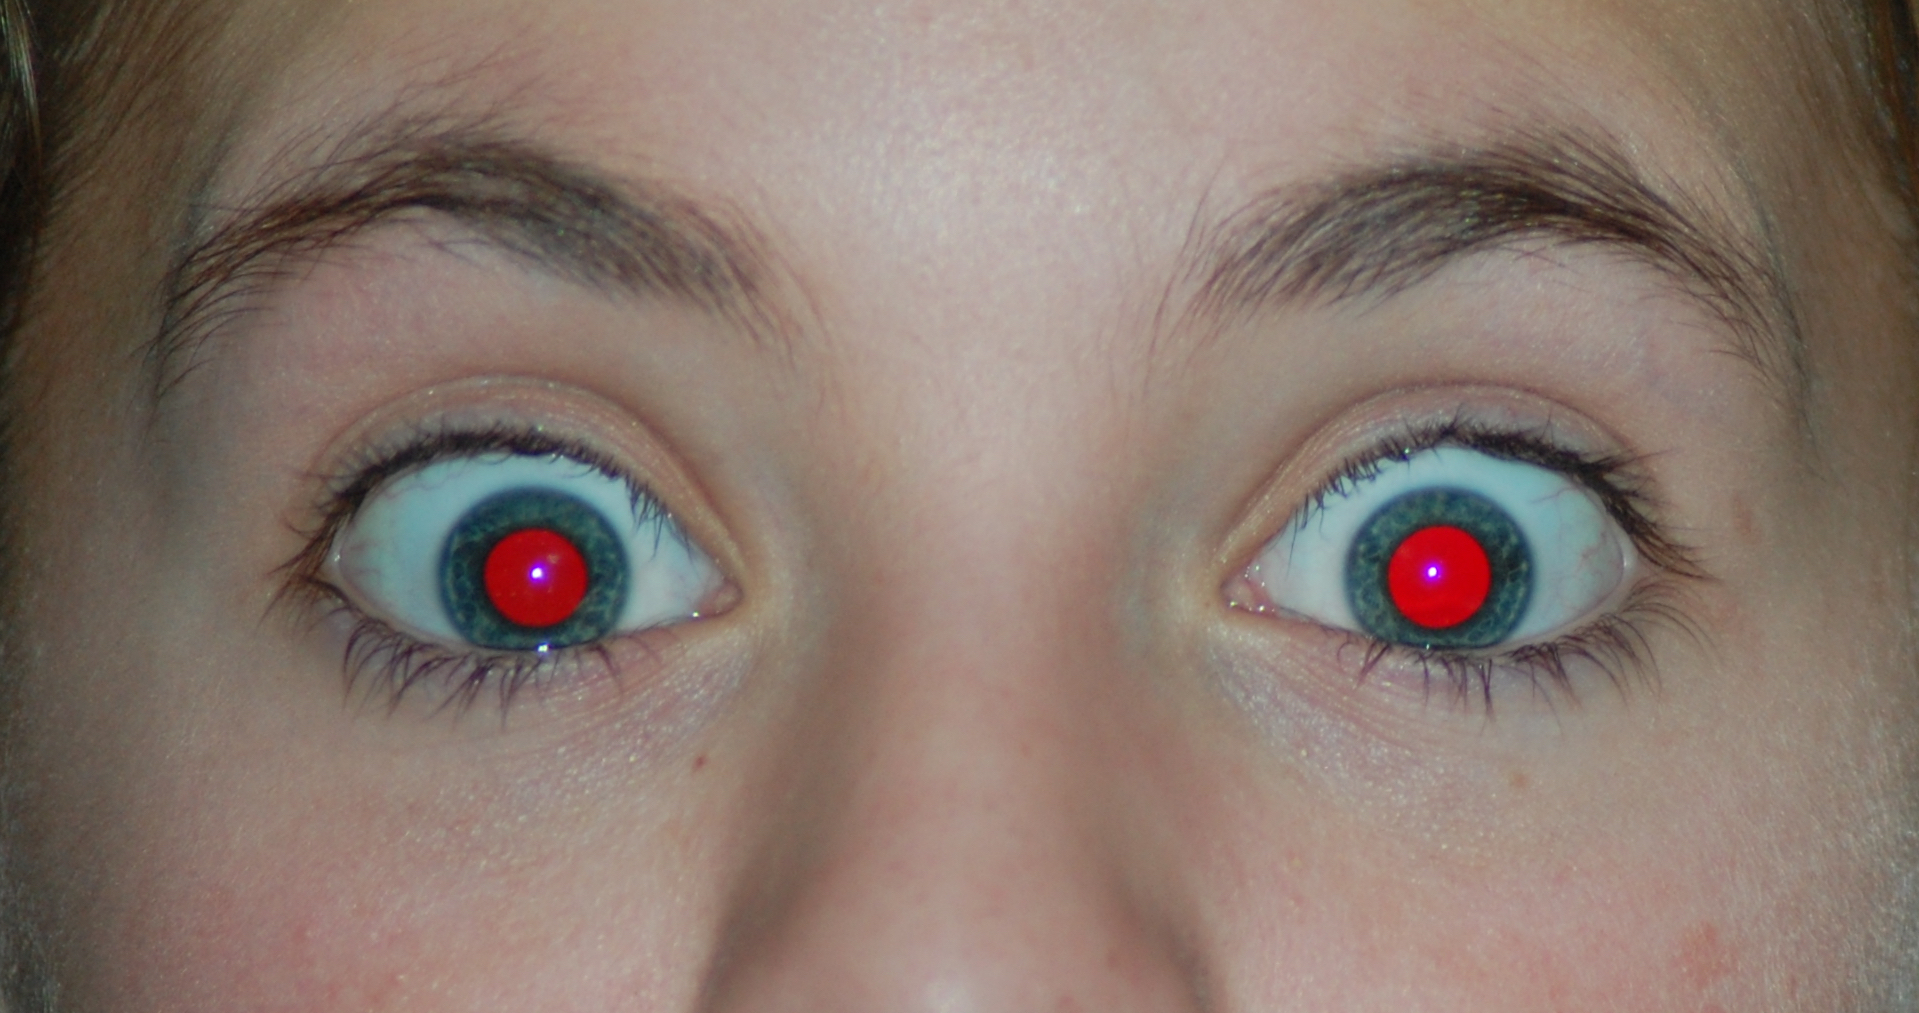 L’effet yeux rouges se produit lorsque la lumière du flash d’un appareil photo vient frapper le fond de l’œil. © PeterPan23, Wikipedia, DP